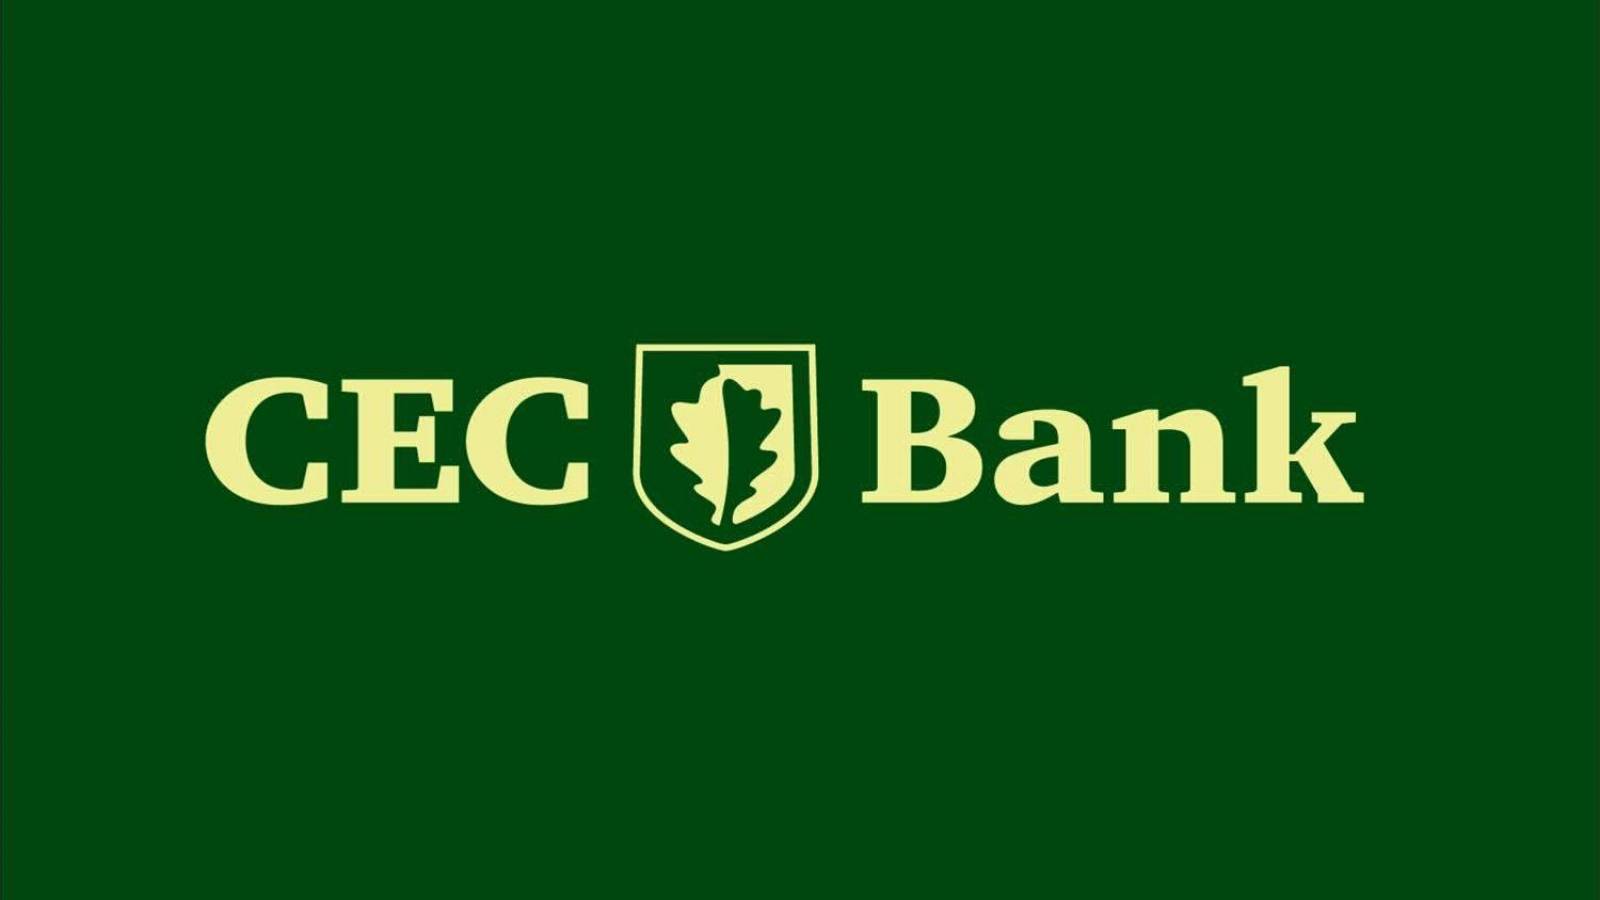 Identität der CEC-Bank